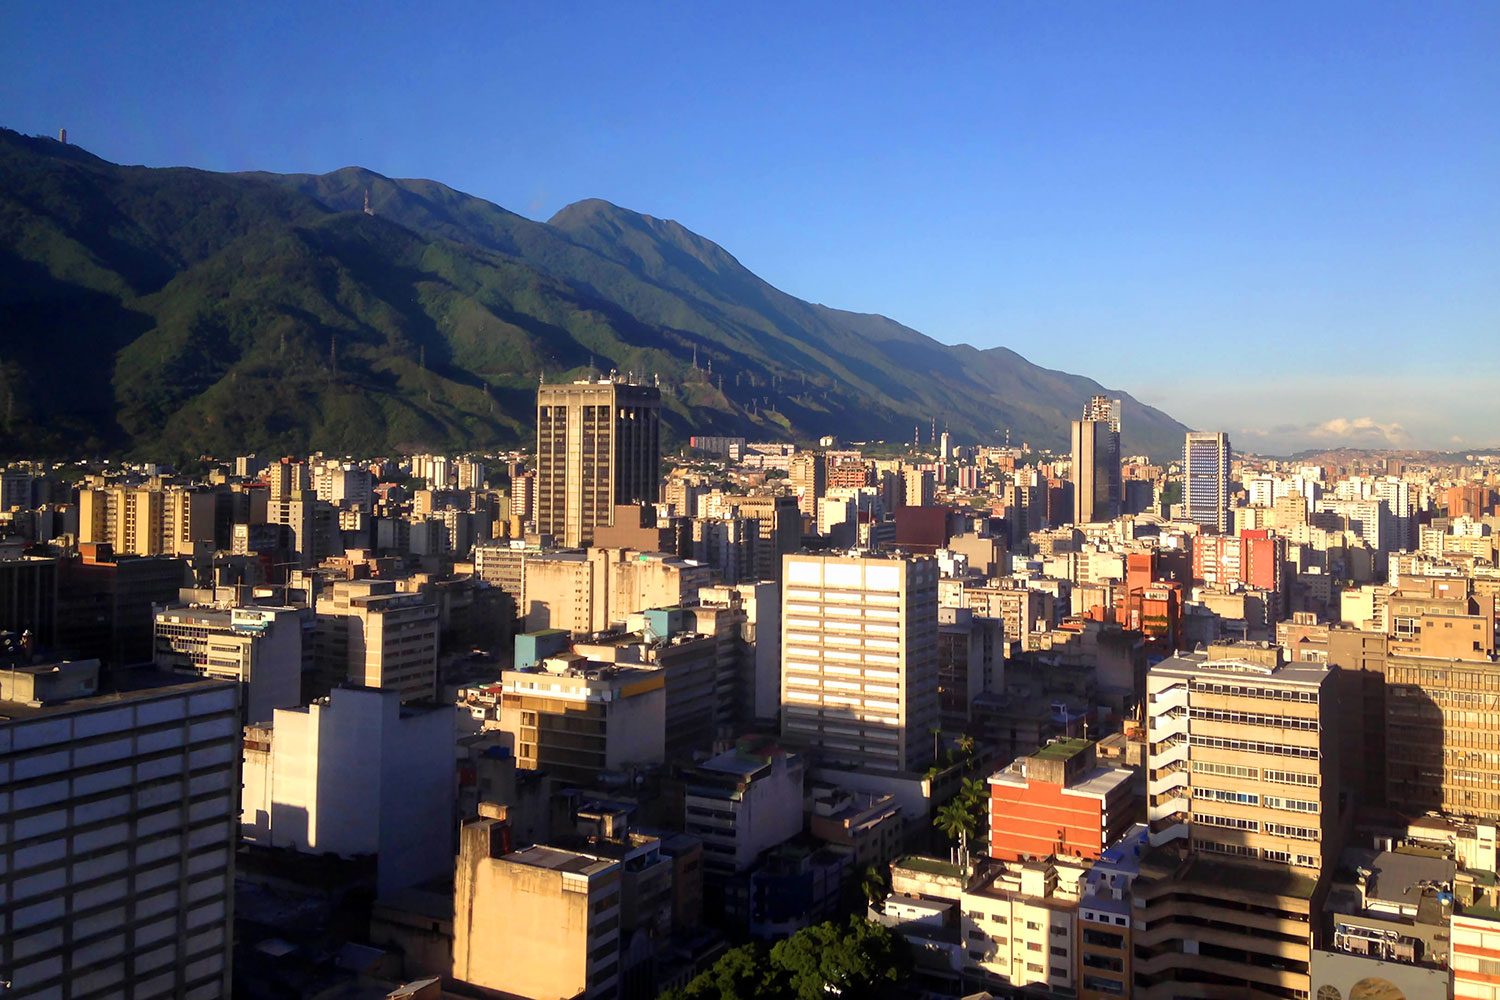 Vista panorámica de la ciudad de Caracas, capital de Venezuela